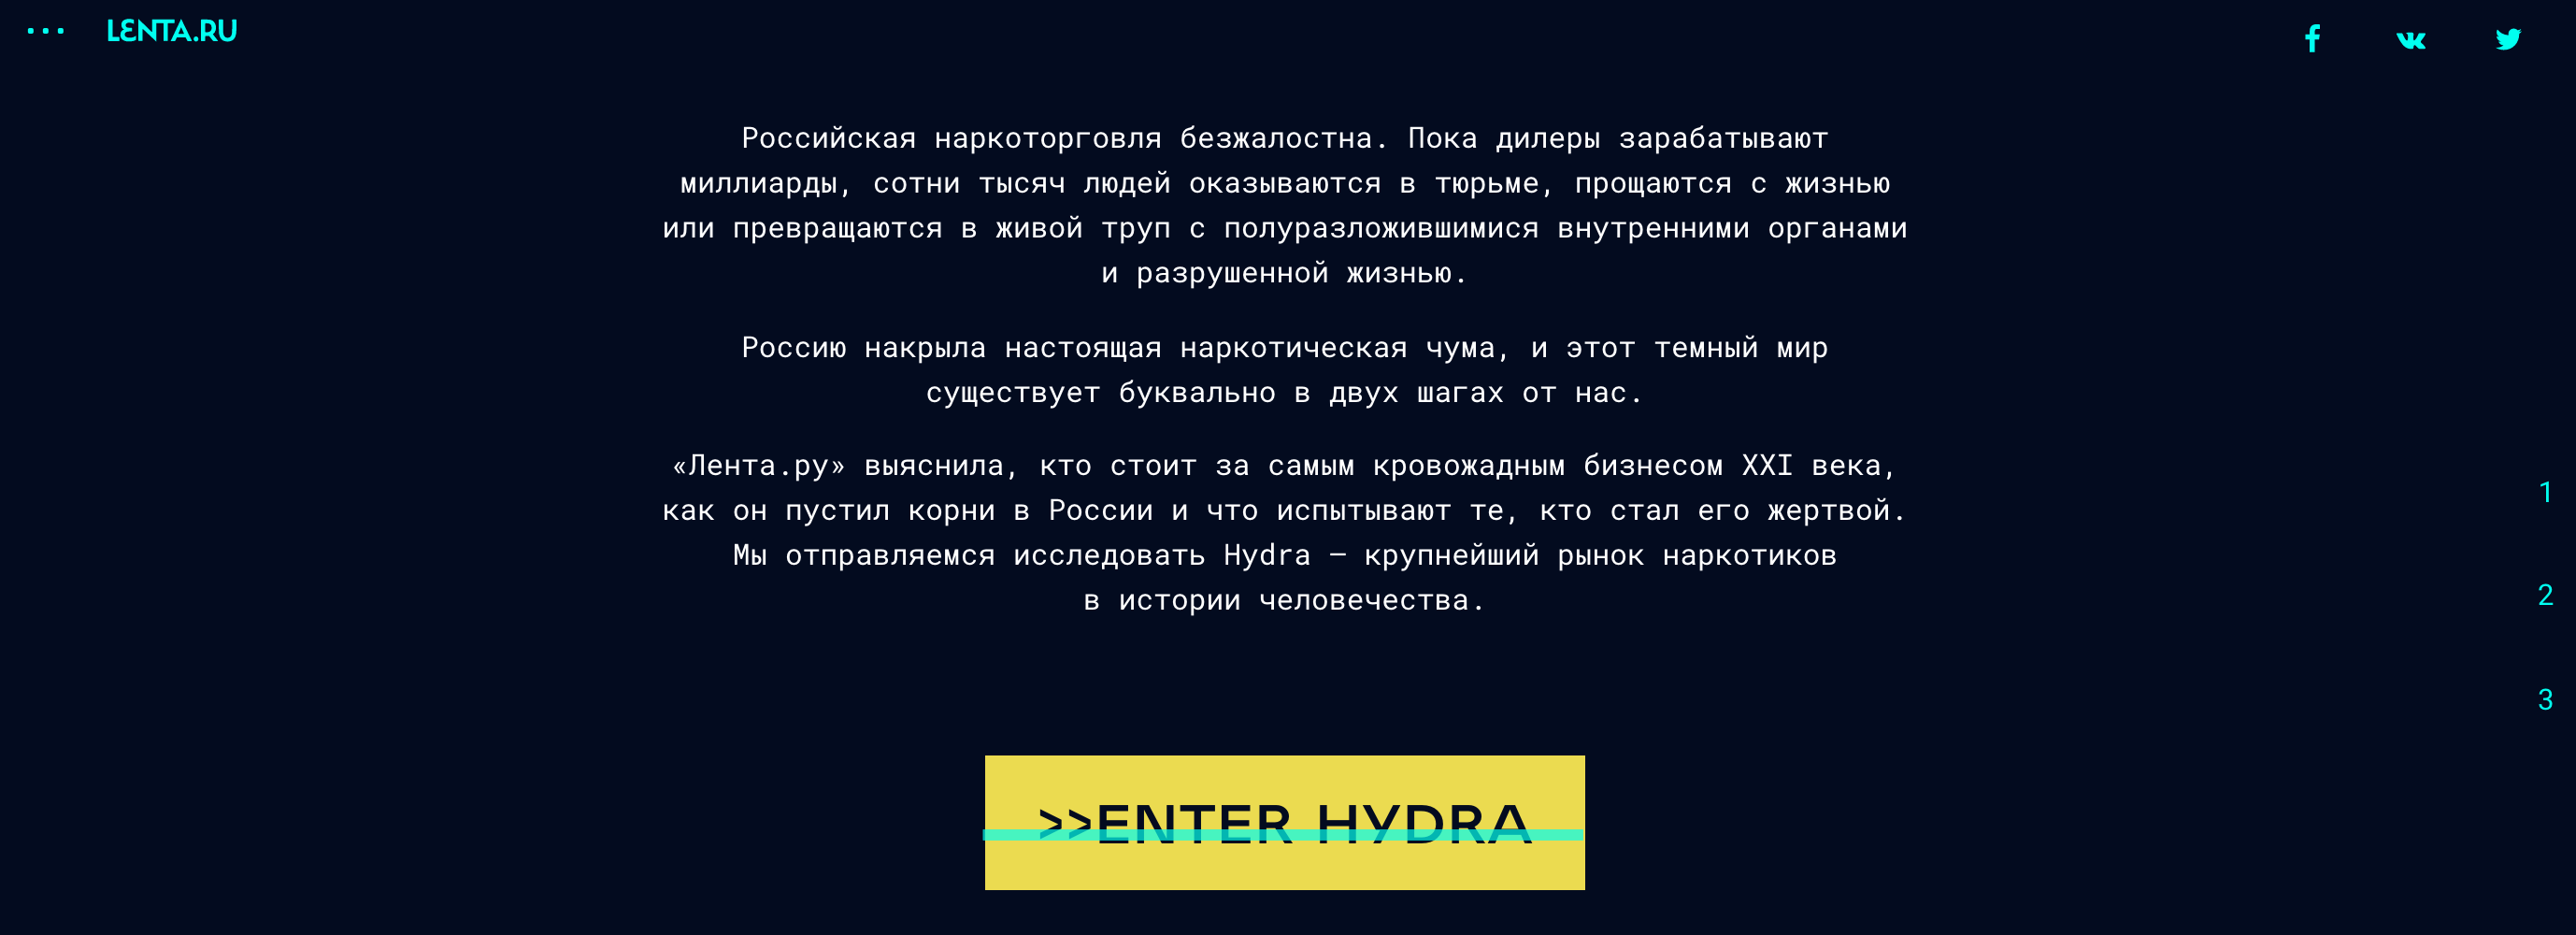 Lenta ru darknet hydra underground darknet hyrda вход